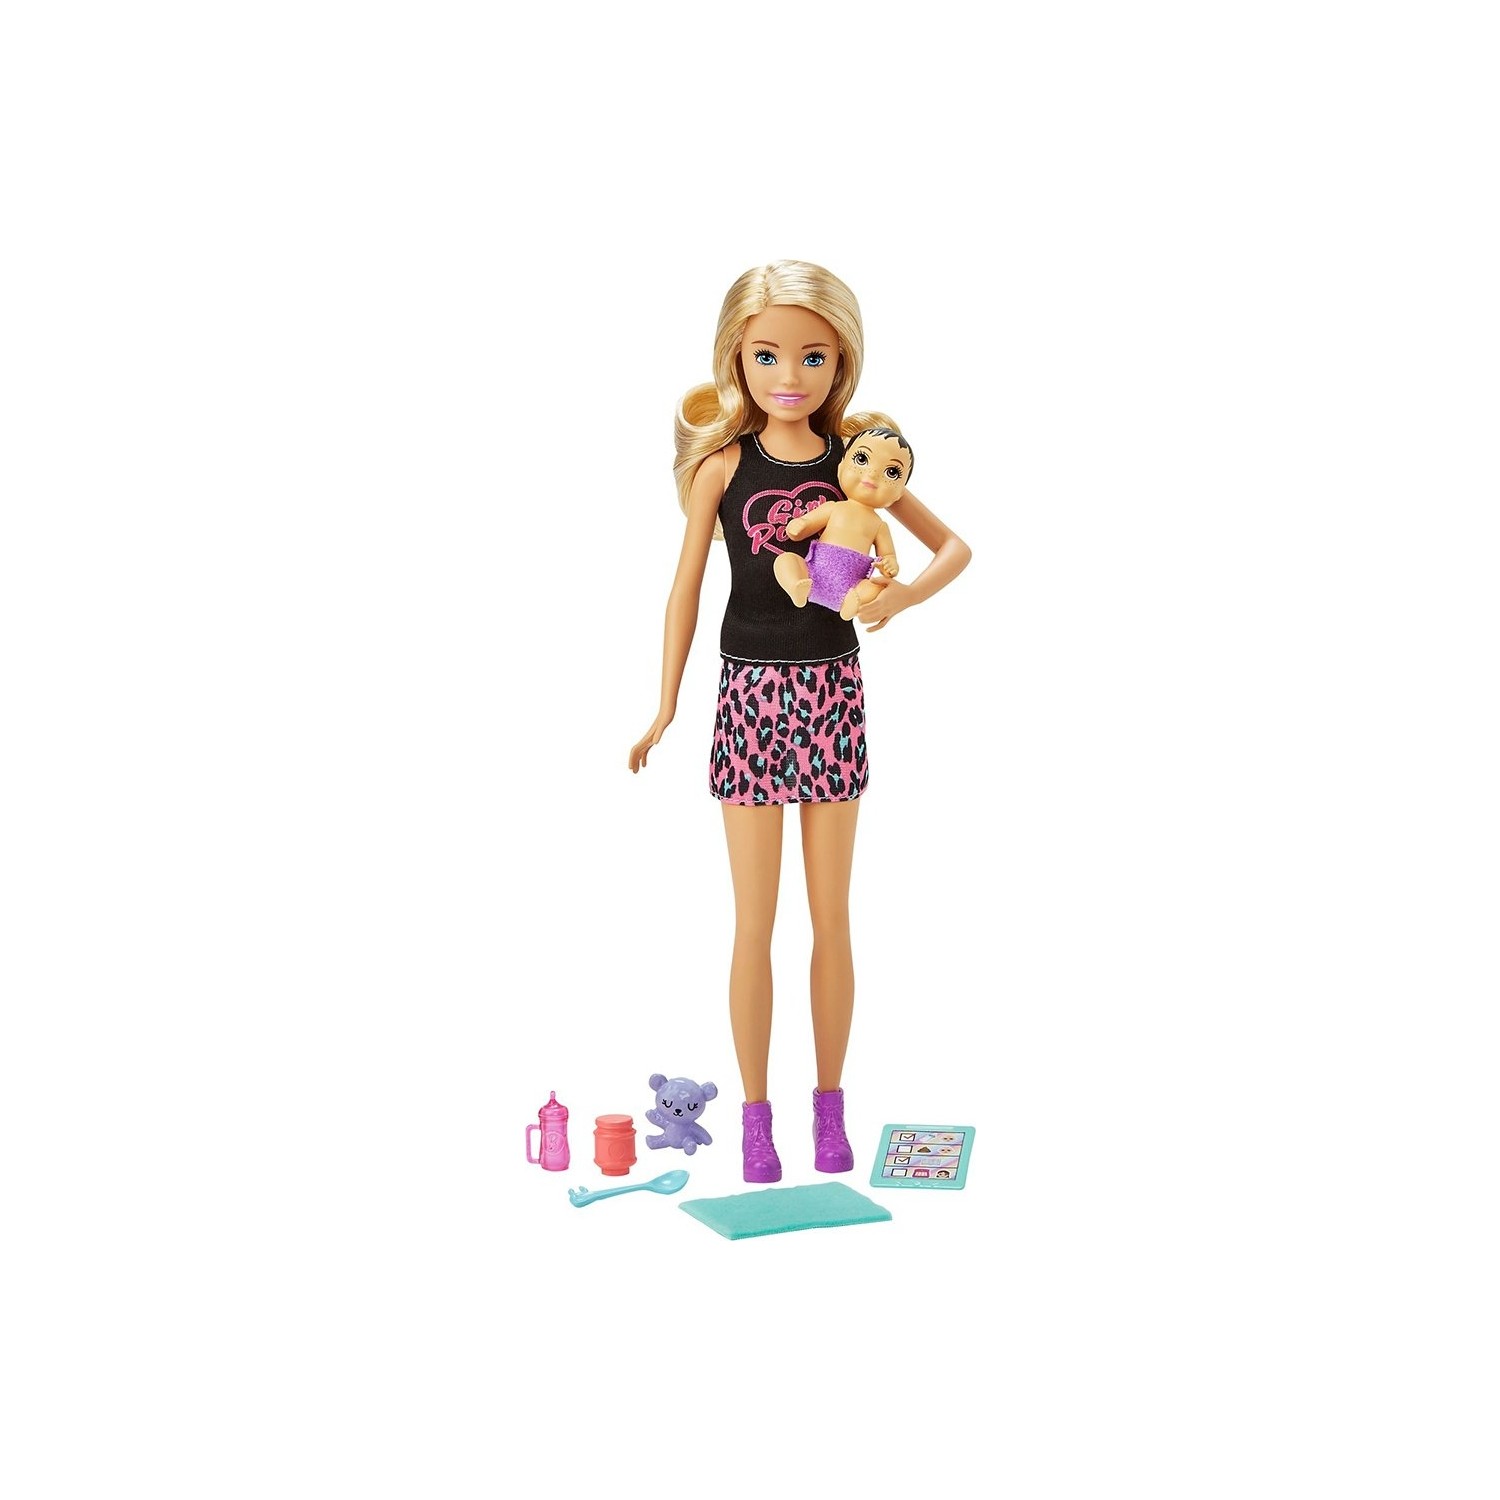 Игровой набор с куклой Barbie и аксессуарами GRP10 кукла барби с феном и короной 29 см игровой набор барби с аксессуарами интерактивная игрушка кукла